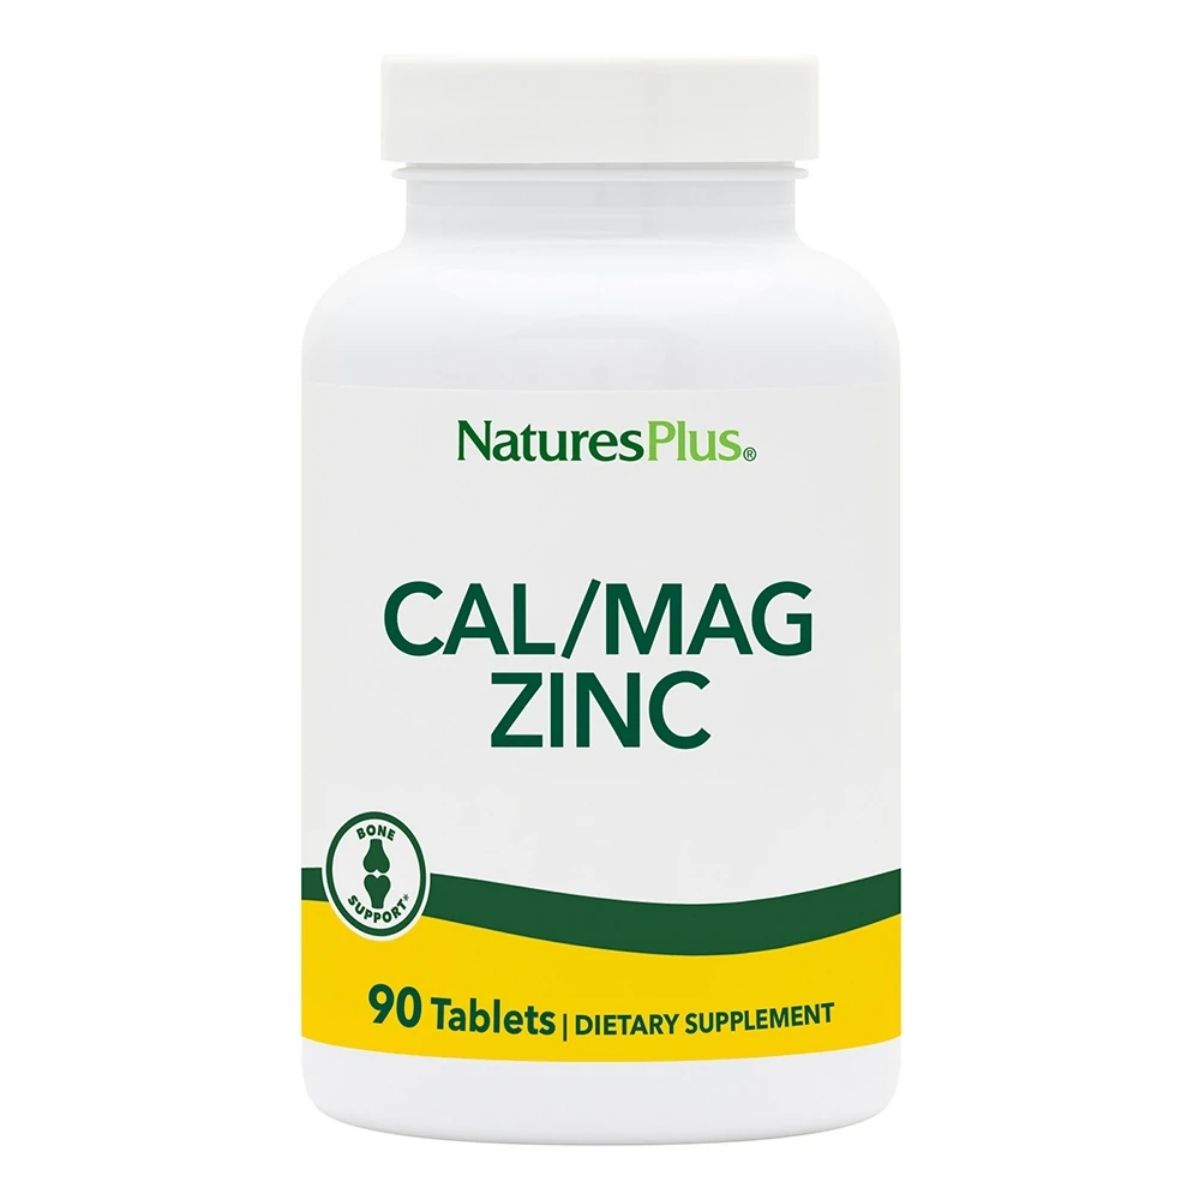 Cal/Mag Zinc